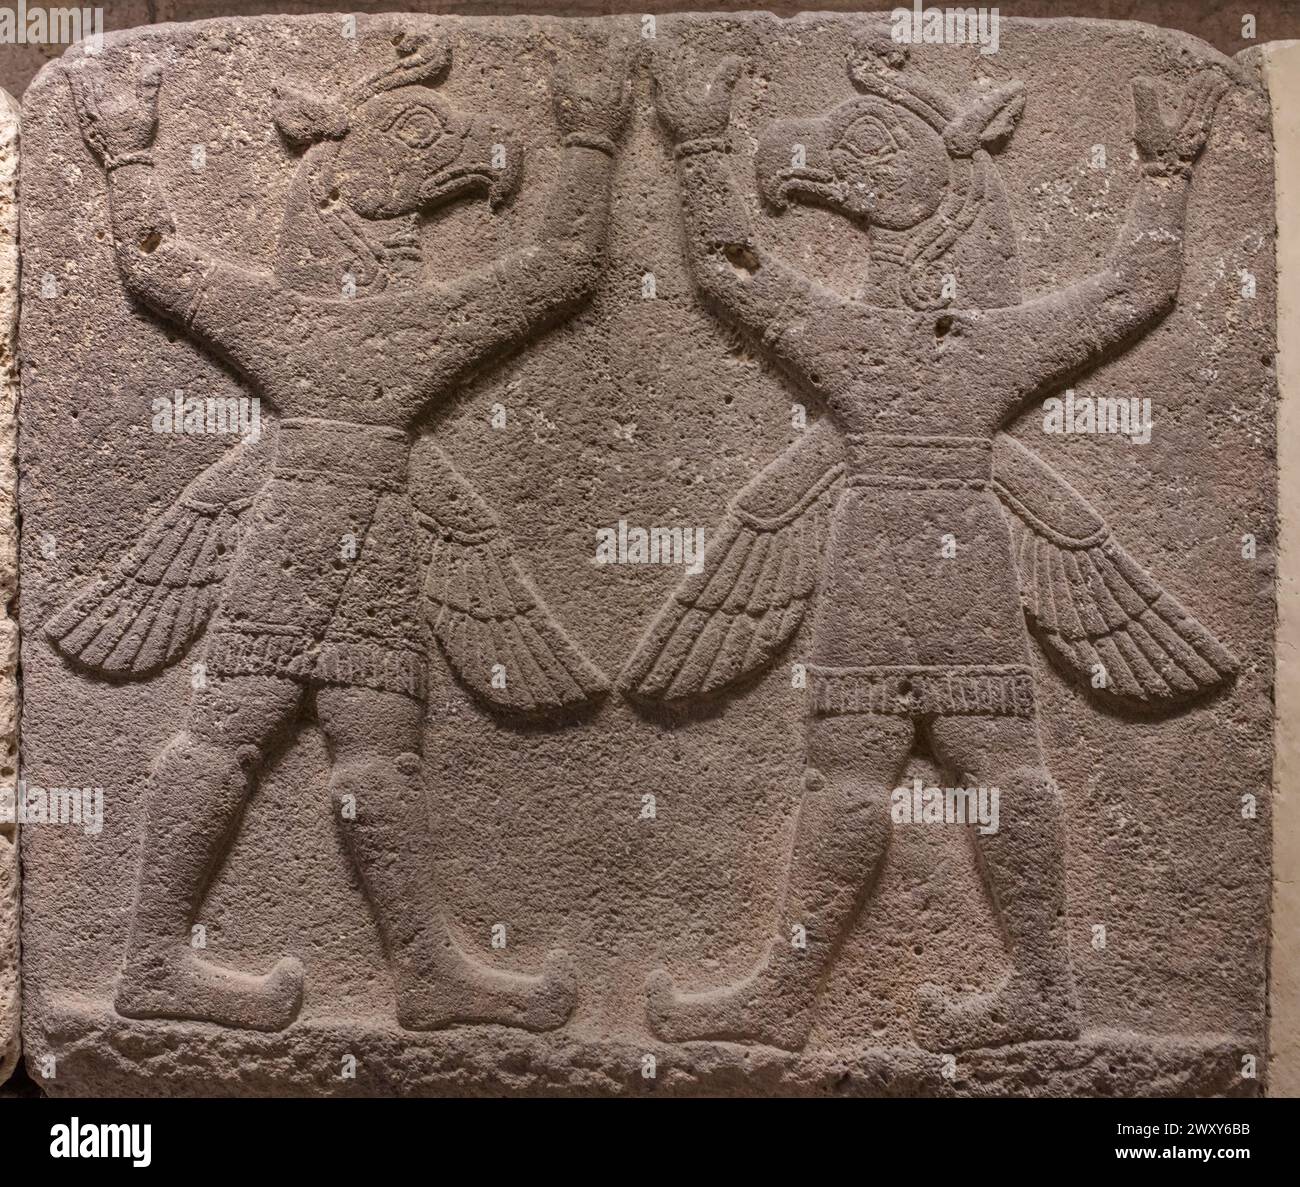 Relieve con demonios alados de grifo, siglo IX a.C., Museo de Civilizaciones Anatolianas, Ankara, Turquía Foto de stock